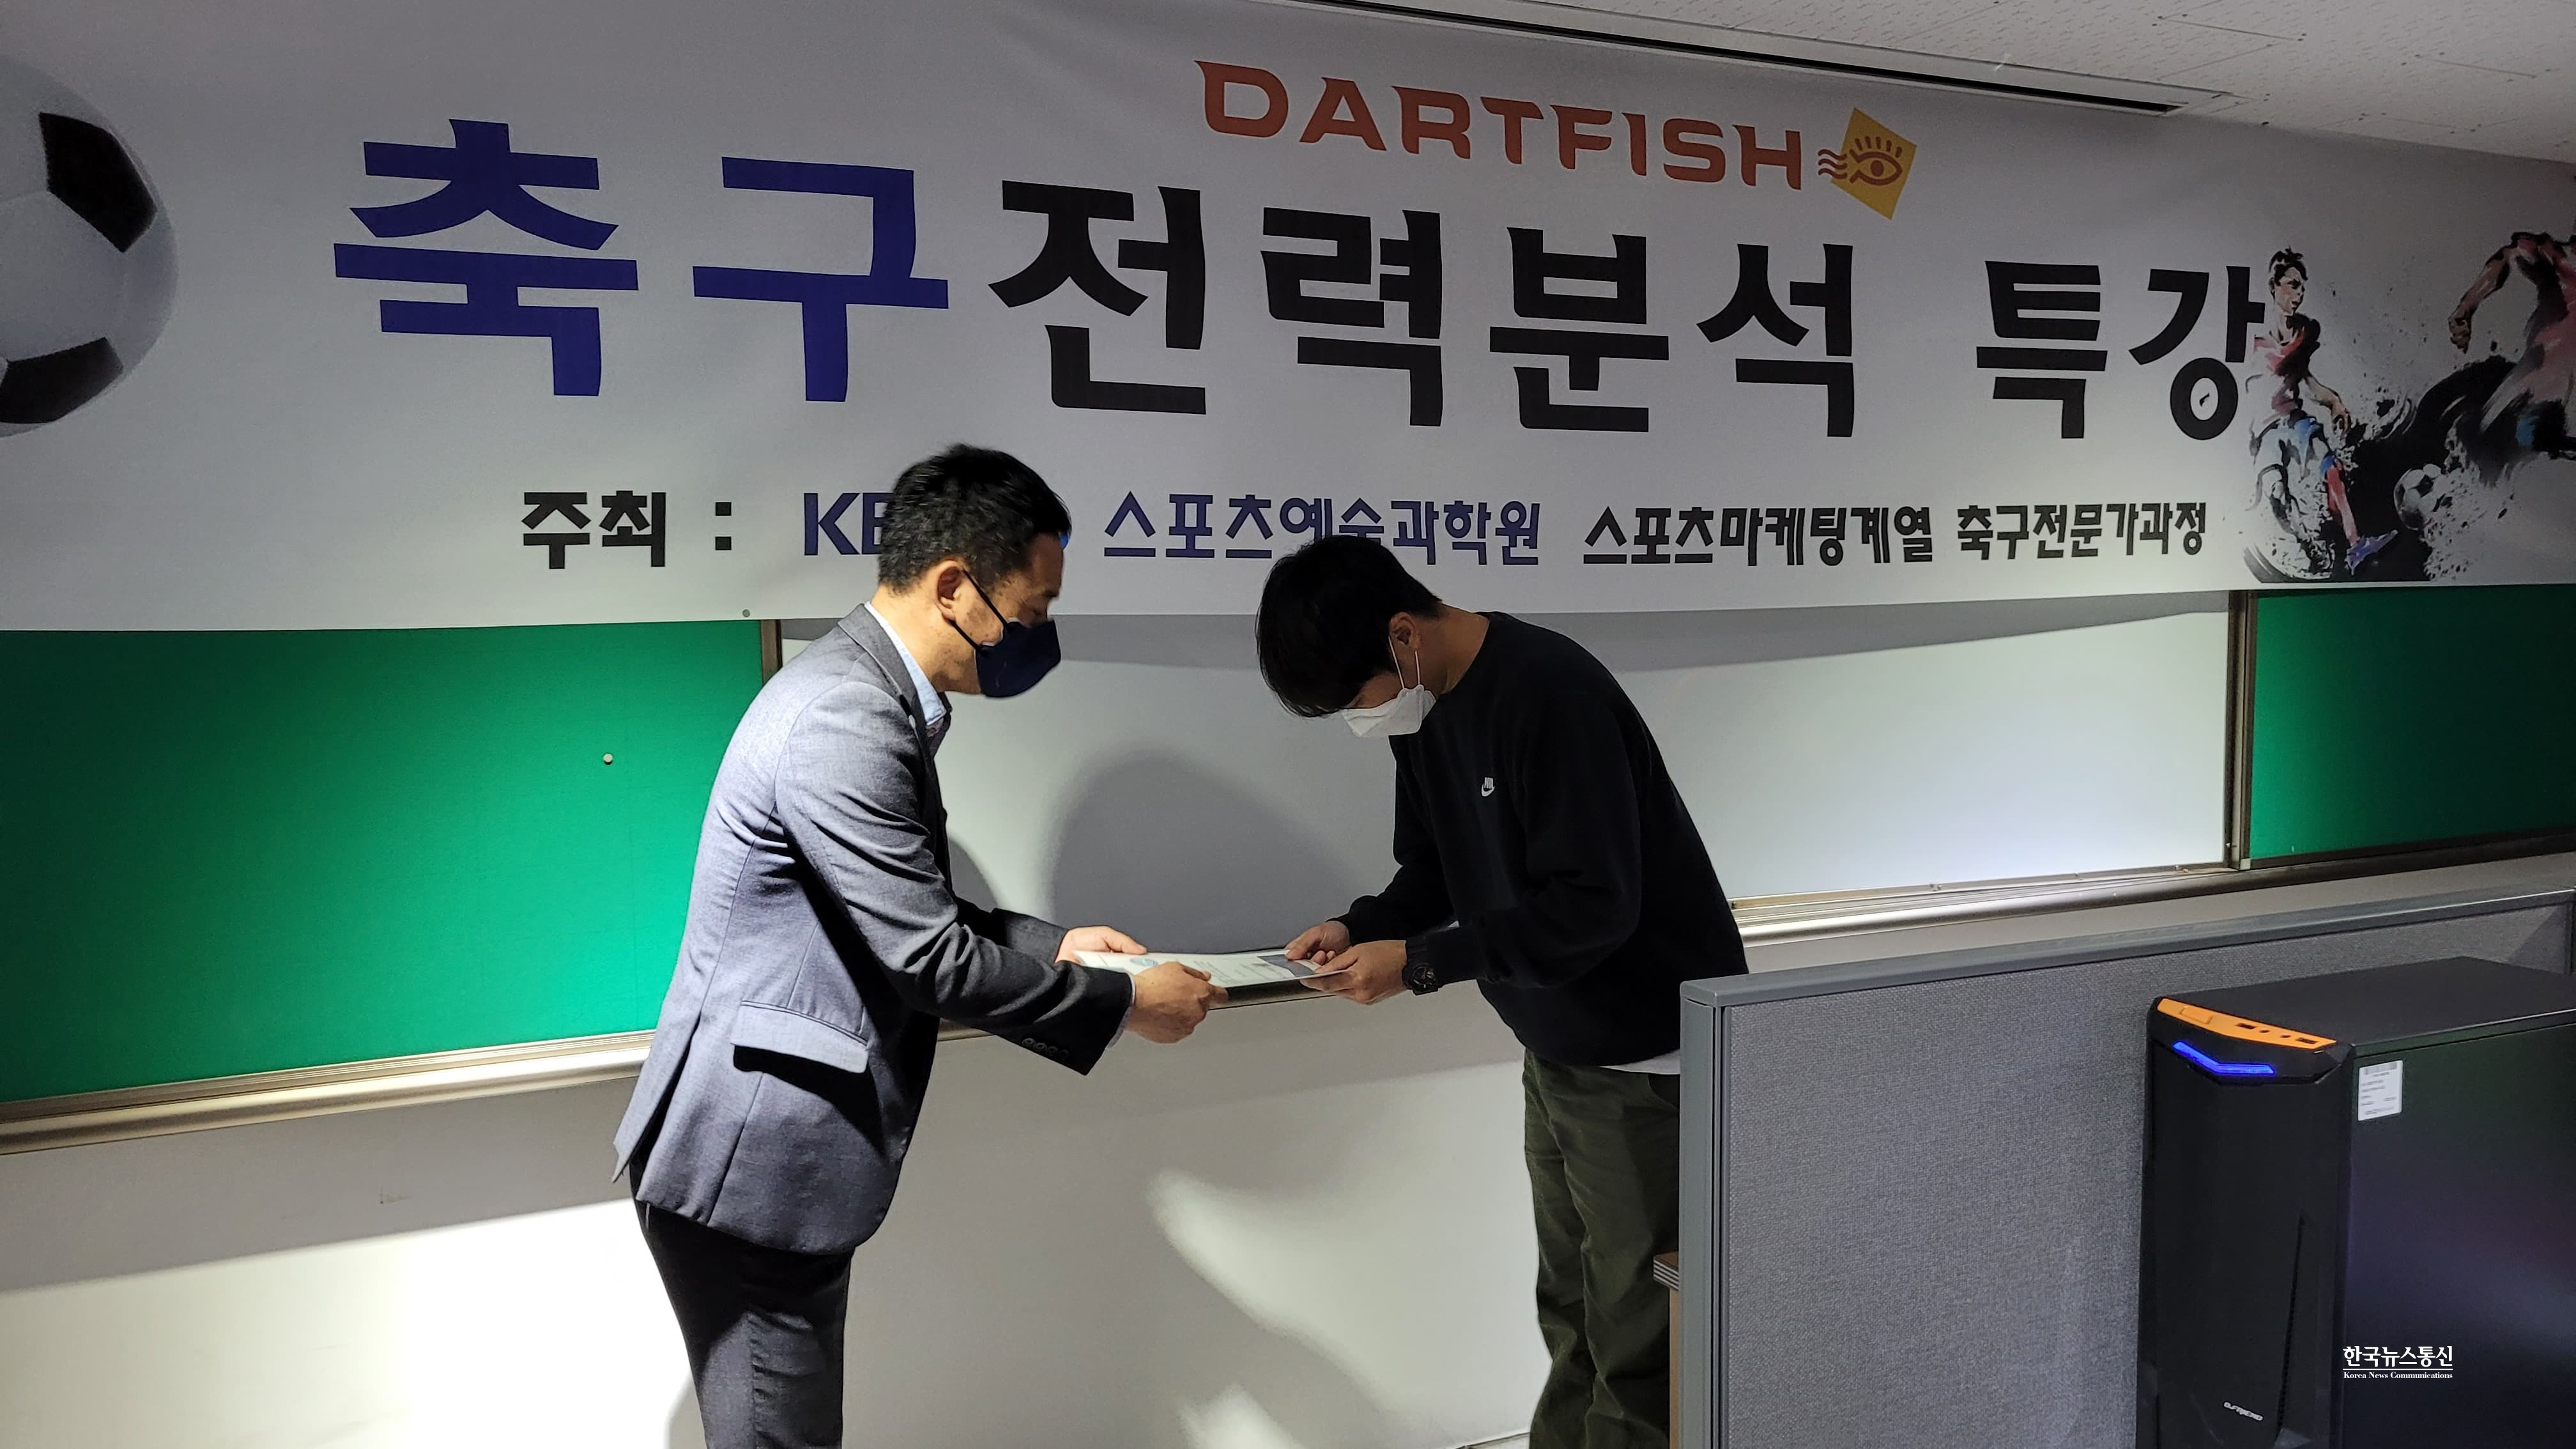 사진 : DARTFISH 한창호 대표가 수료증을 전달하는 모습이다.